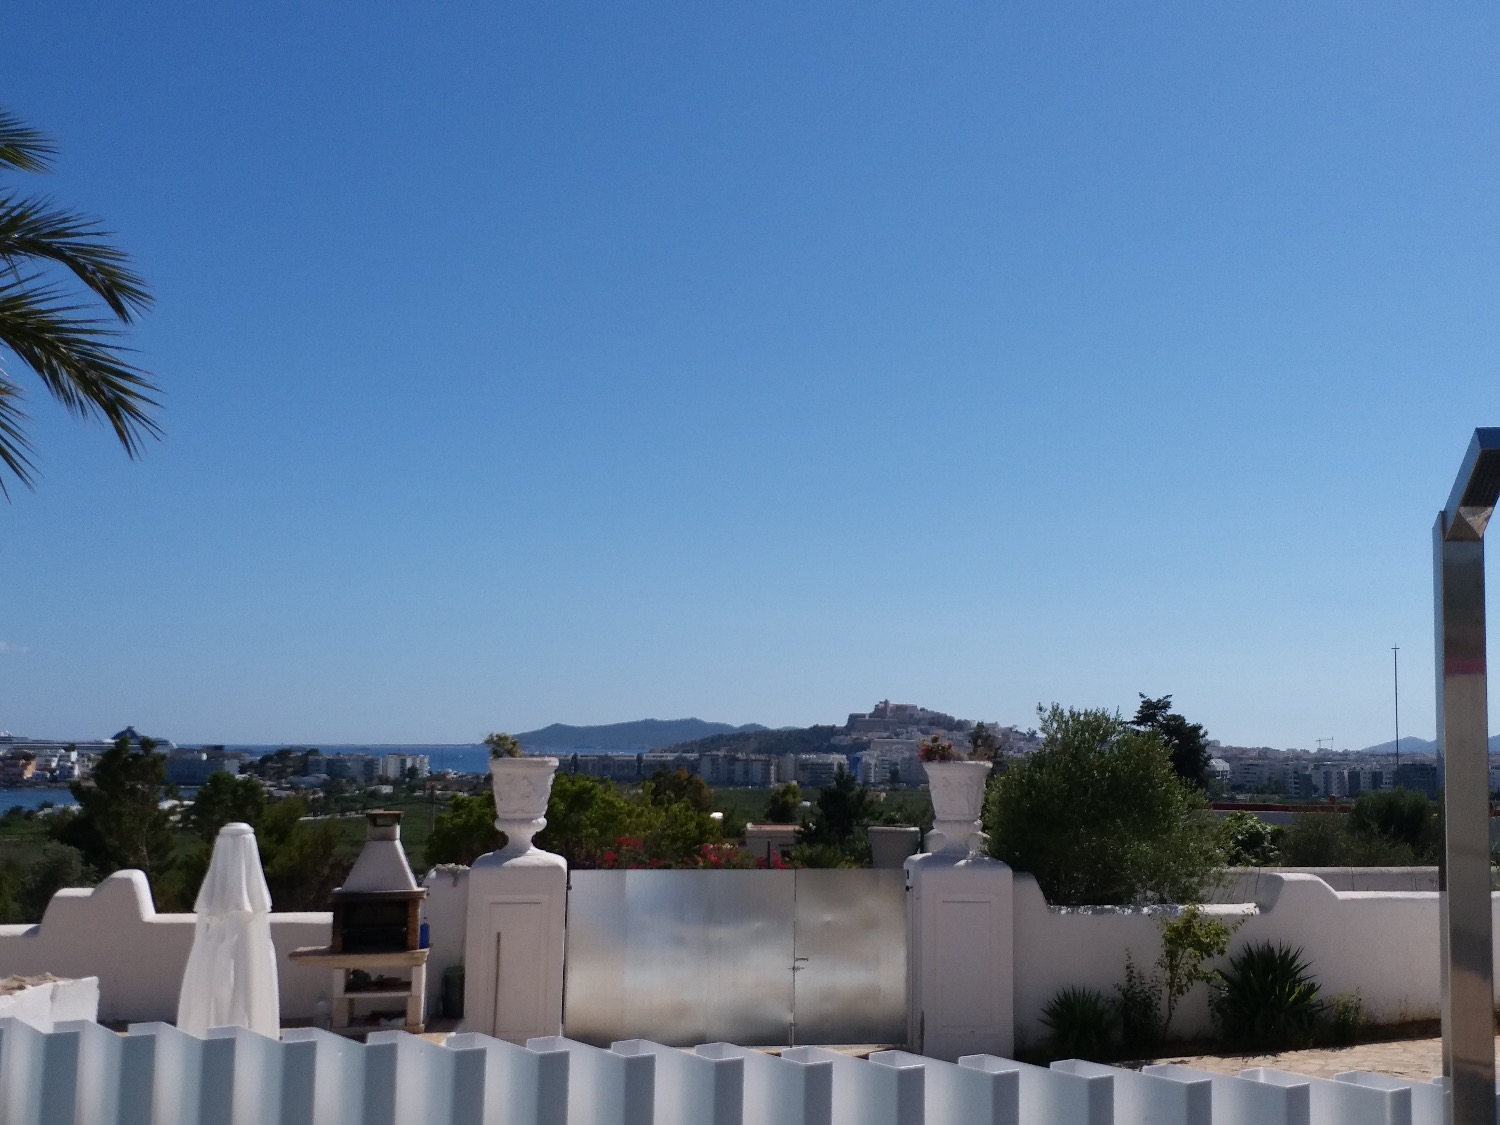 Villak salgai in Ibiza